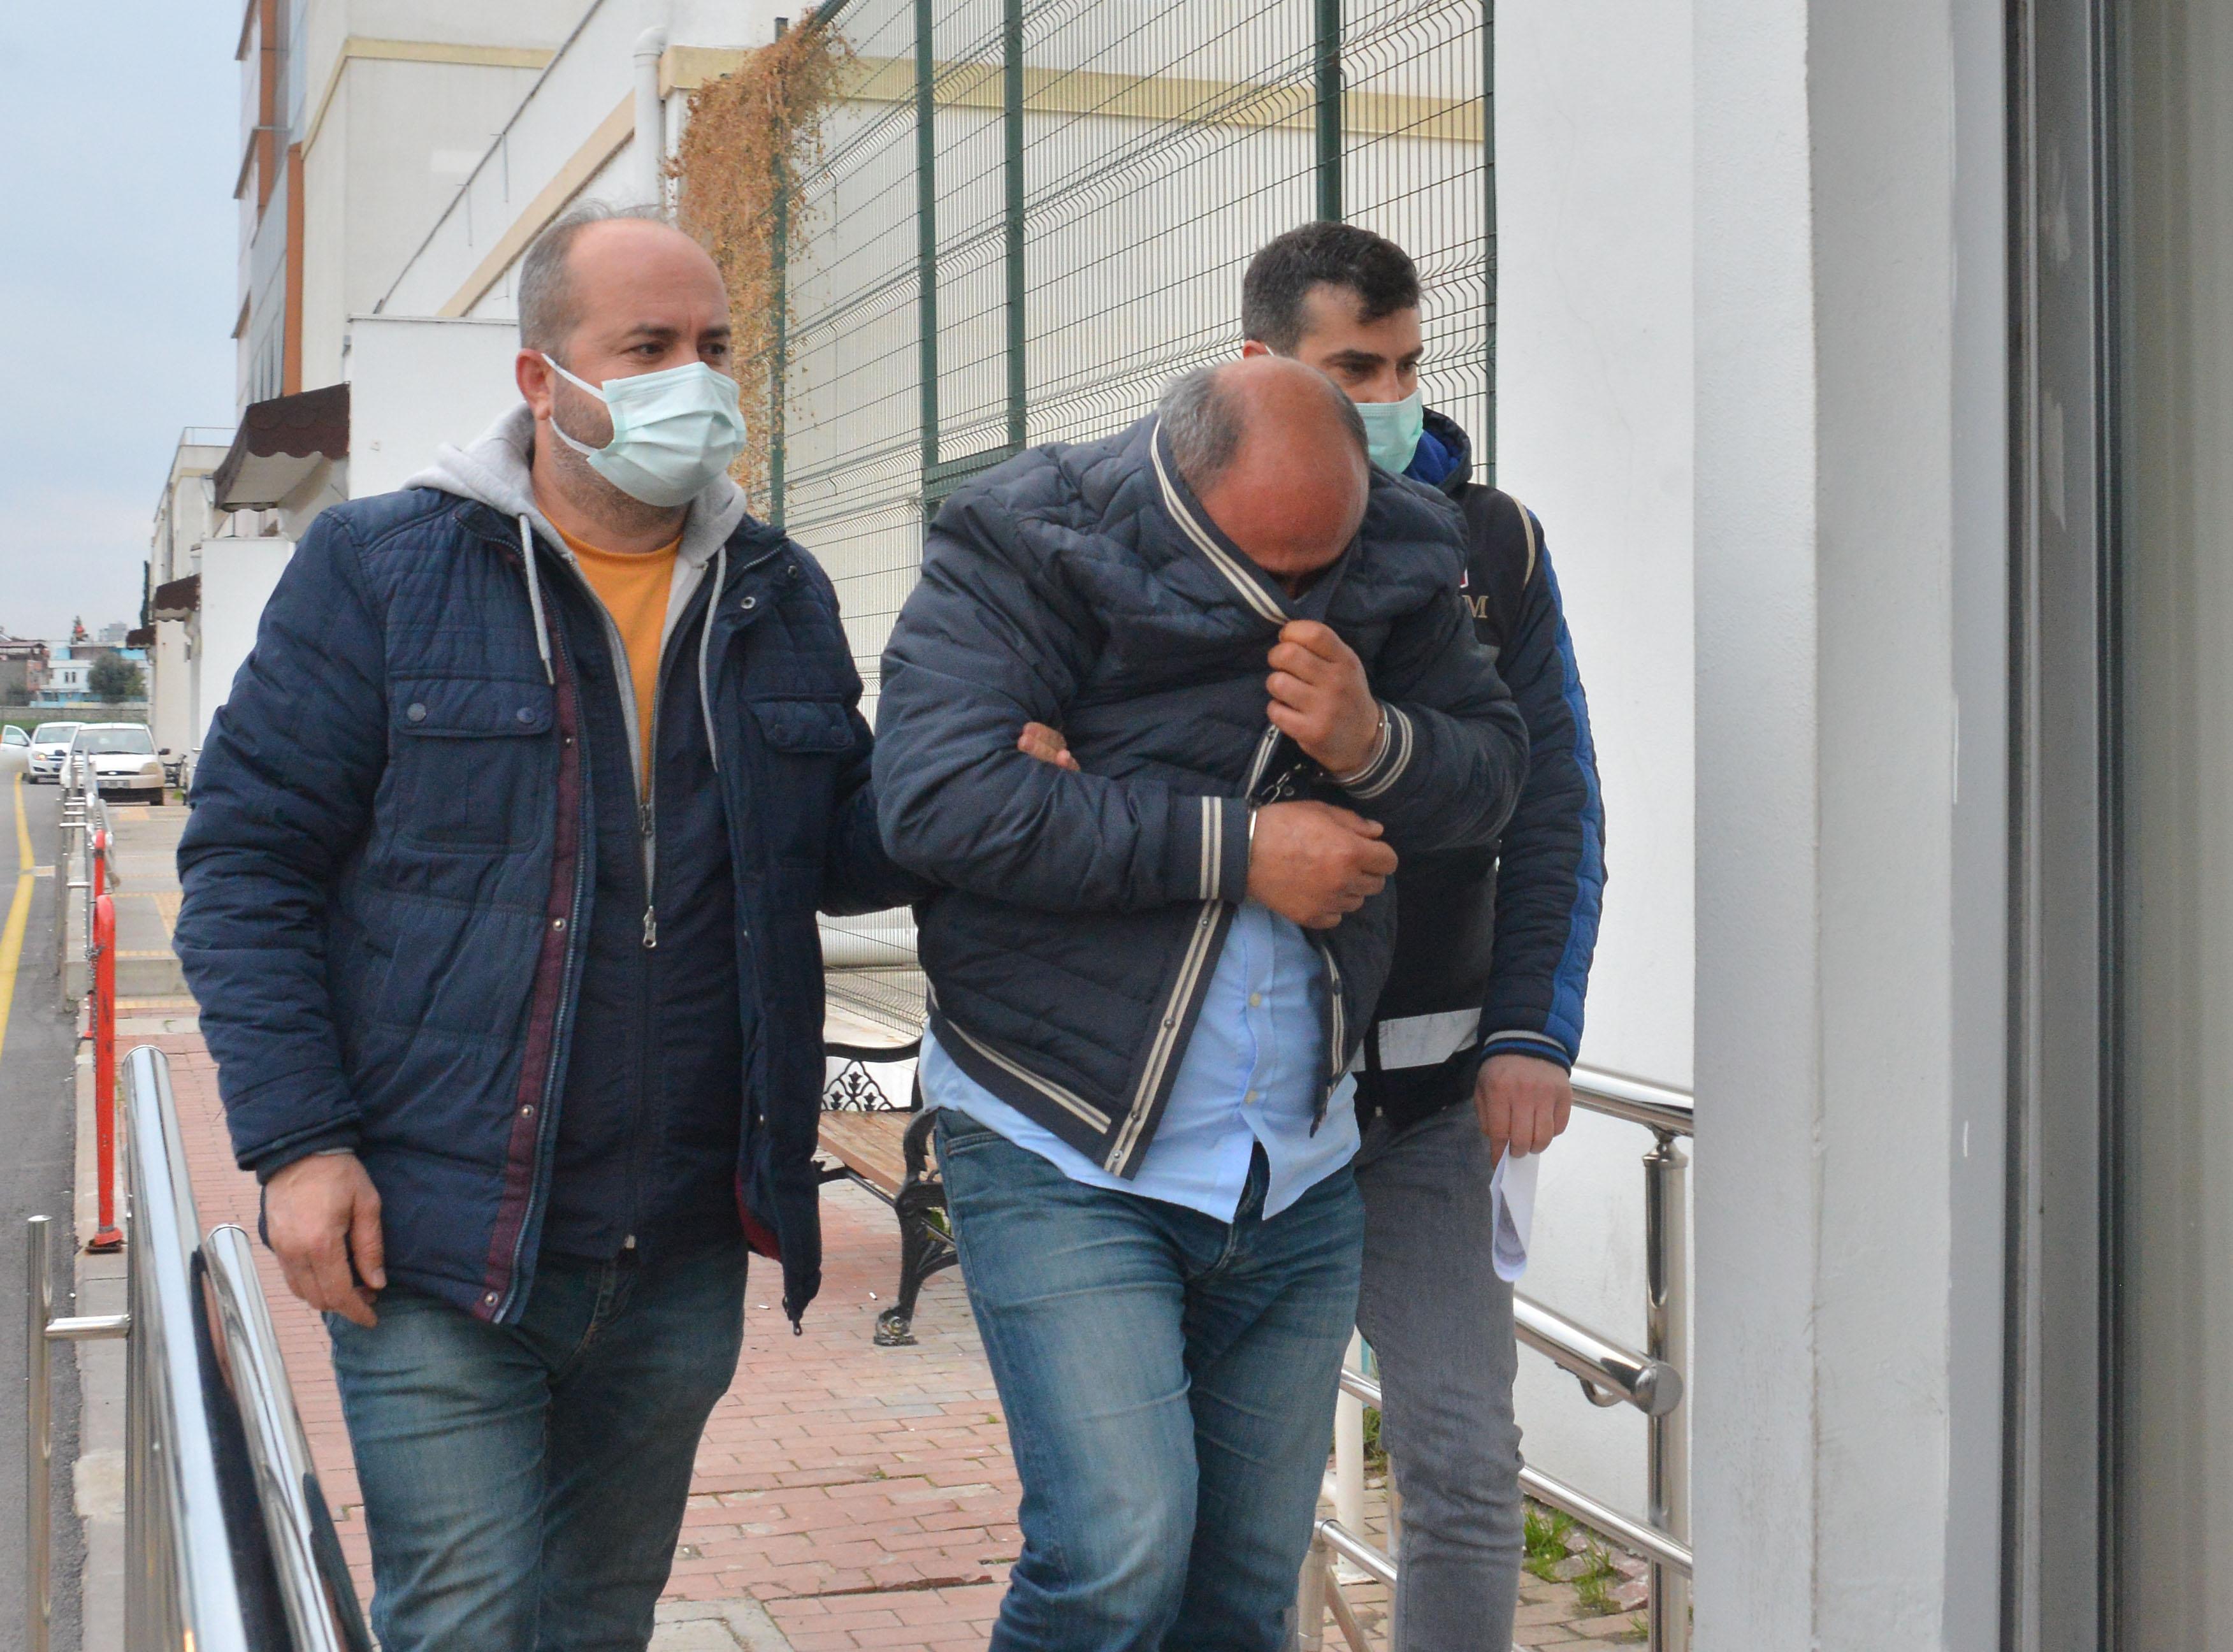 Adana merkezli usulsüz reçete ile 12,5 milyon lira vurgun yapan şebekeye operasyon